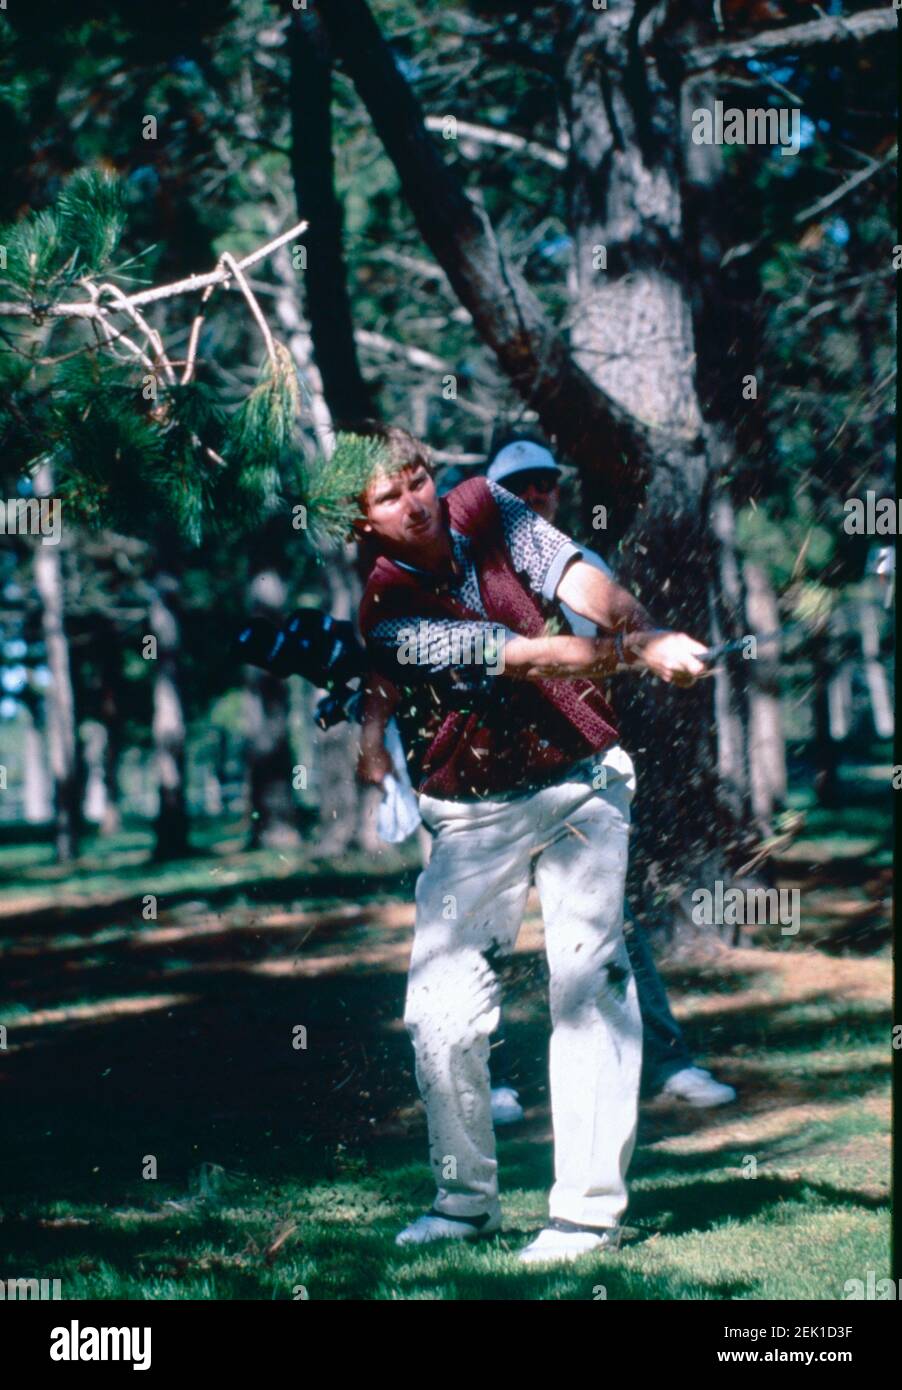 Jimmy Connors, joueur américain de tennis, 1995 Banque D'Images